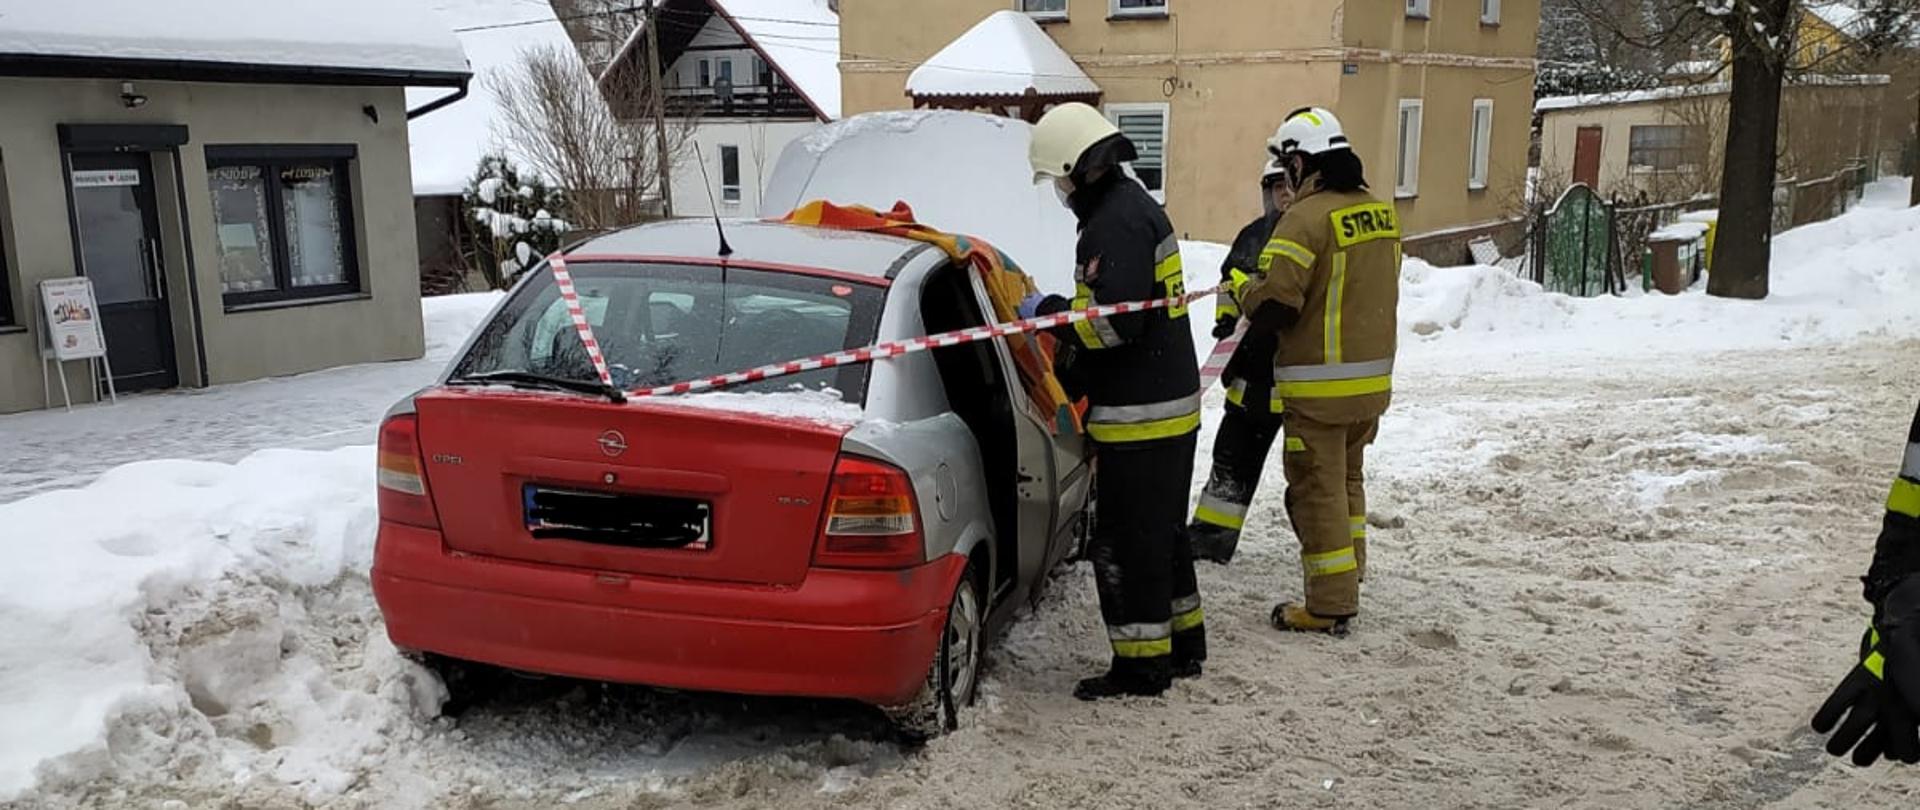 Po lewej stronie stojący na zaśnieżonym poboczu uszkodzony samochód. Przy nim stoi trzech strażaków w ubraniach specjalnych. W tle budynki.